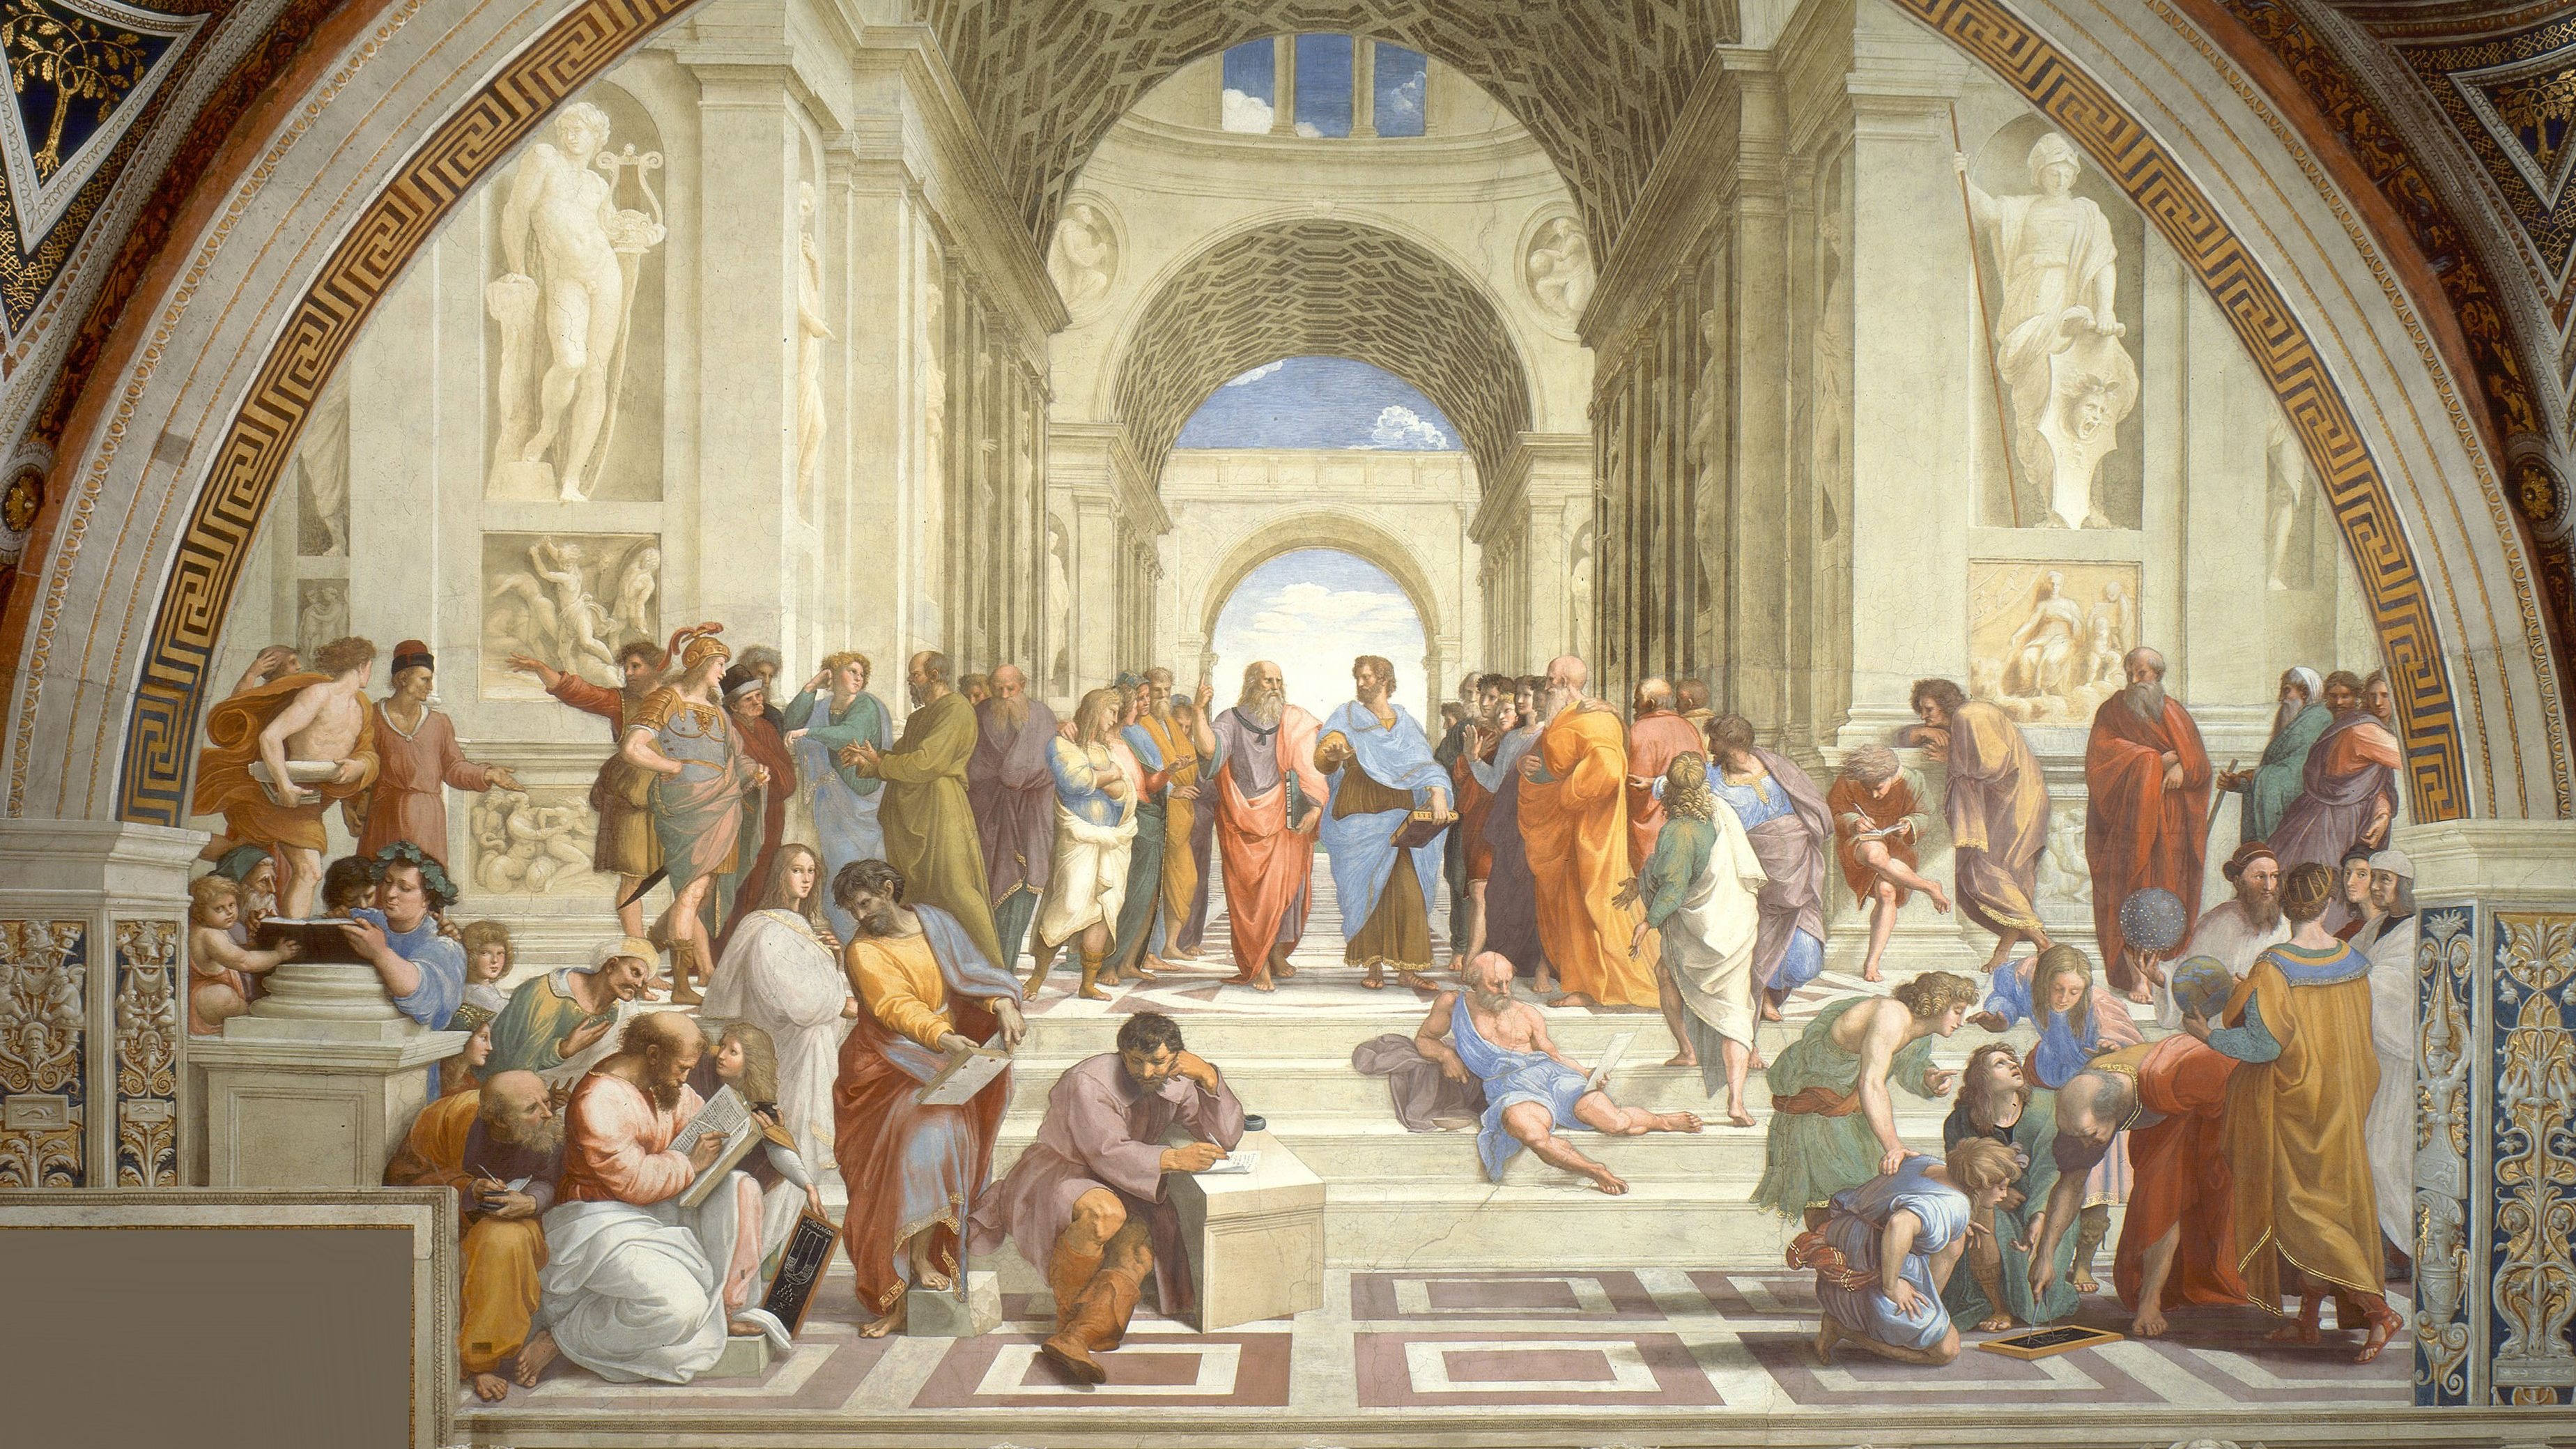 Plato and Aristotle debate in Raffaello Sanzio da Urbino's painting "The School of Athens."